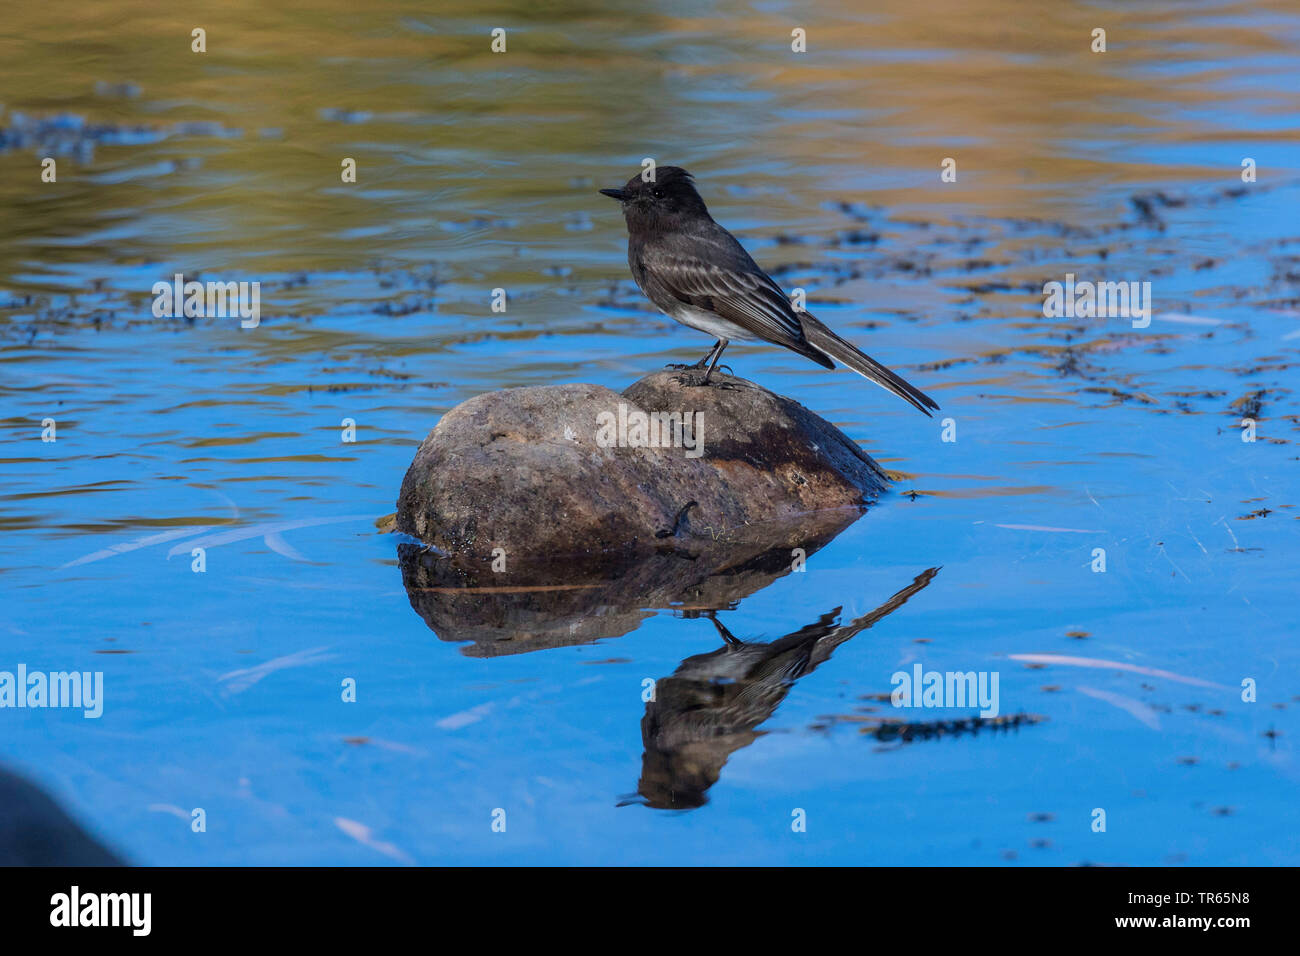 Nero phoebe (Sayornis nigricans), seduto su una pietra in acque poco profonde, immagine speculare, STATI UNITI D'AMERICA, Arizona, sale sul fiume Phoenix Foto Stock